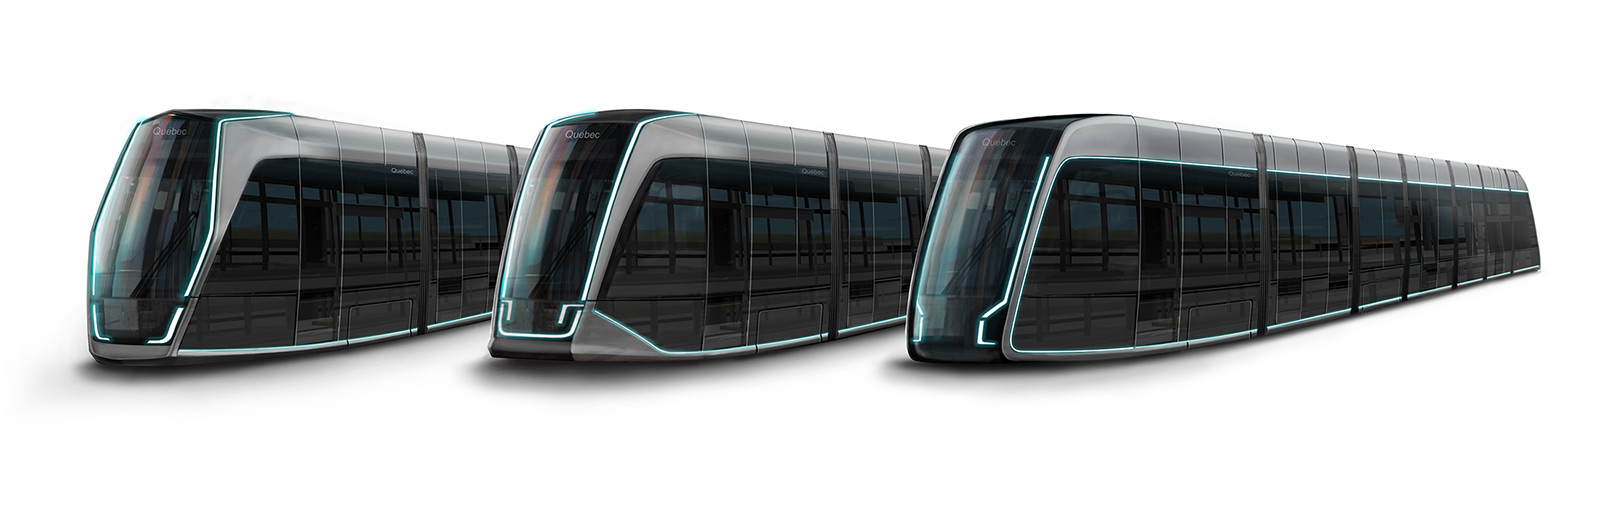 Image des trois concepts de tramways, en perspective.